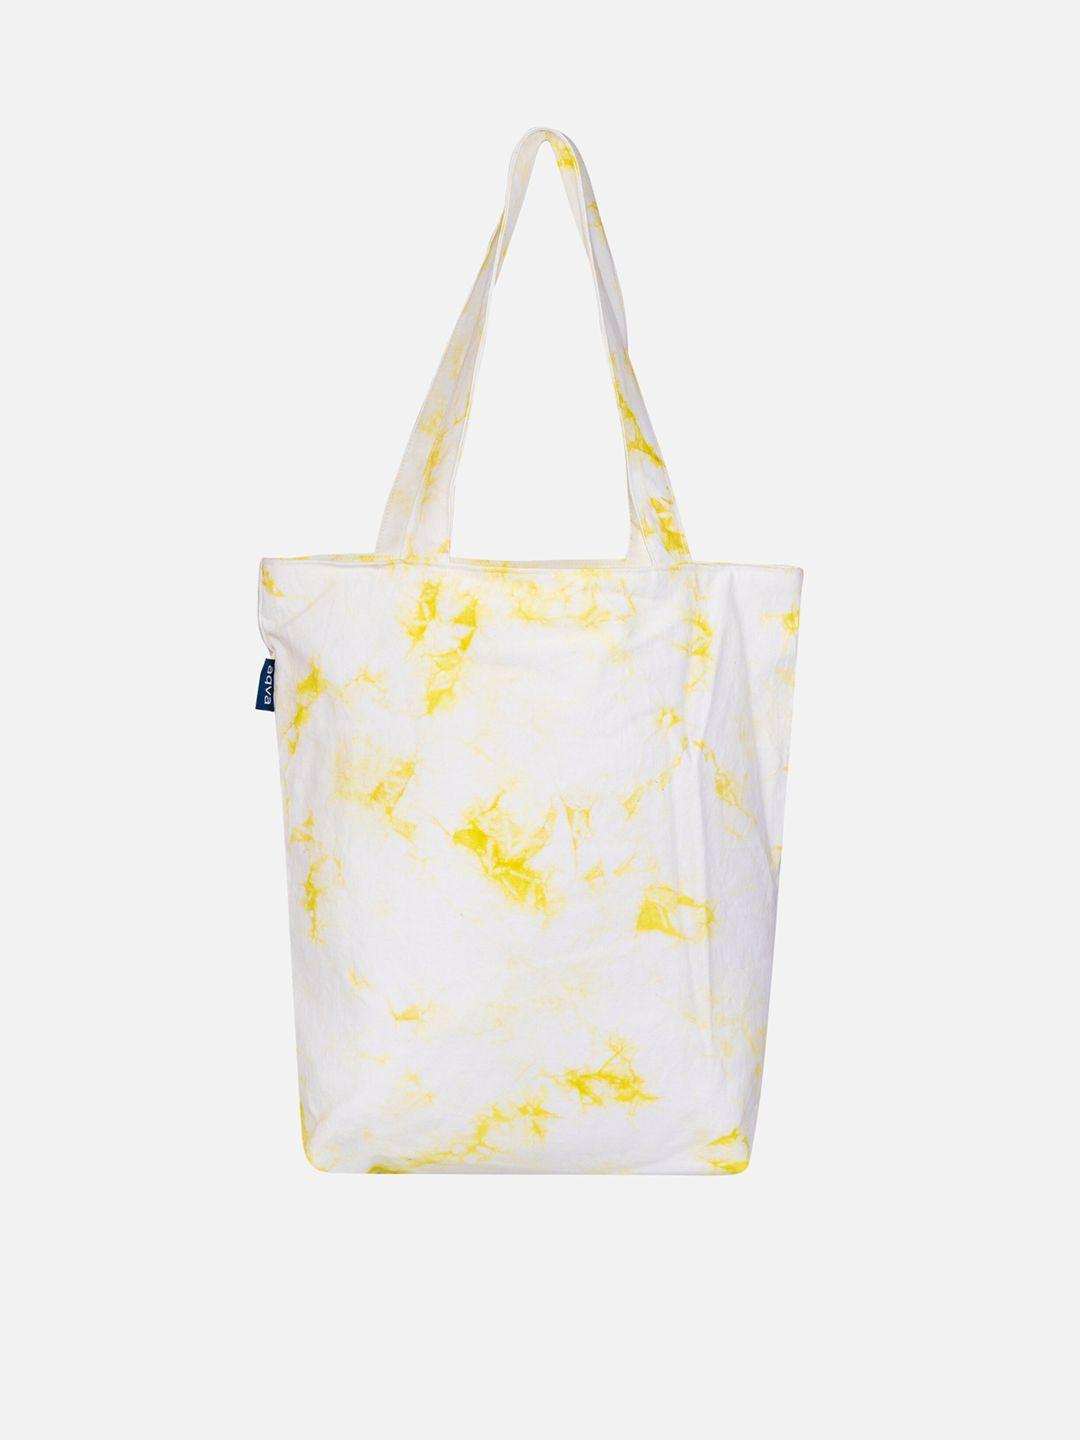 aqva abstract printed shopper tote bag